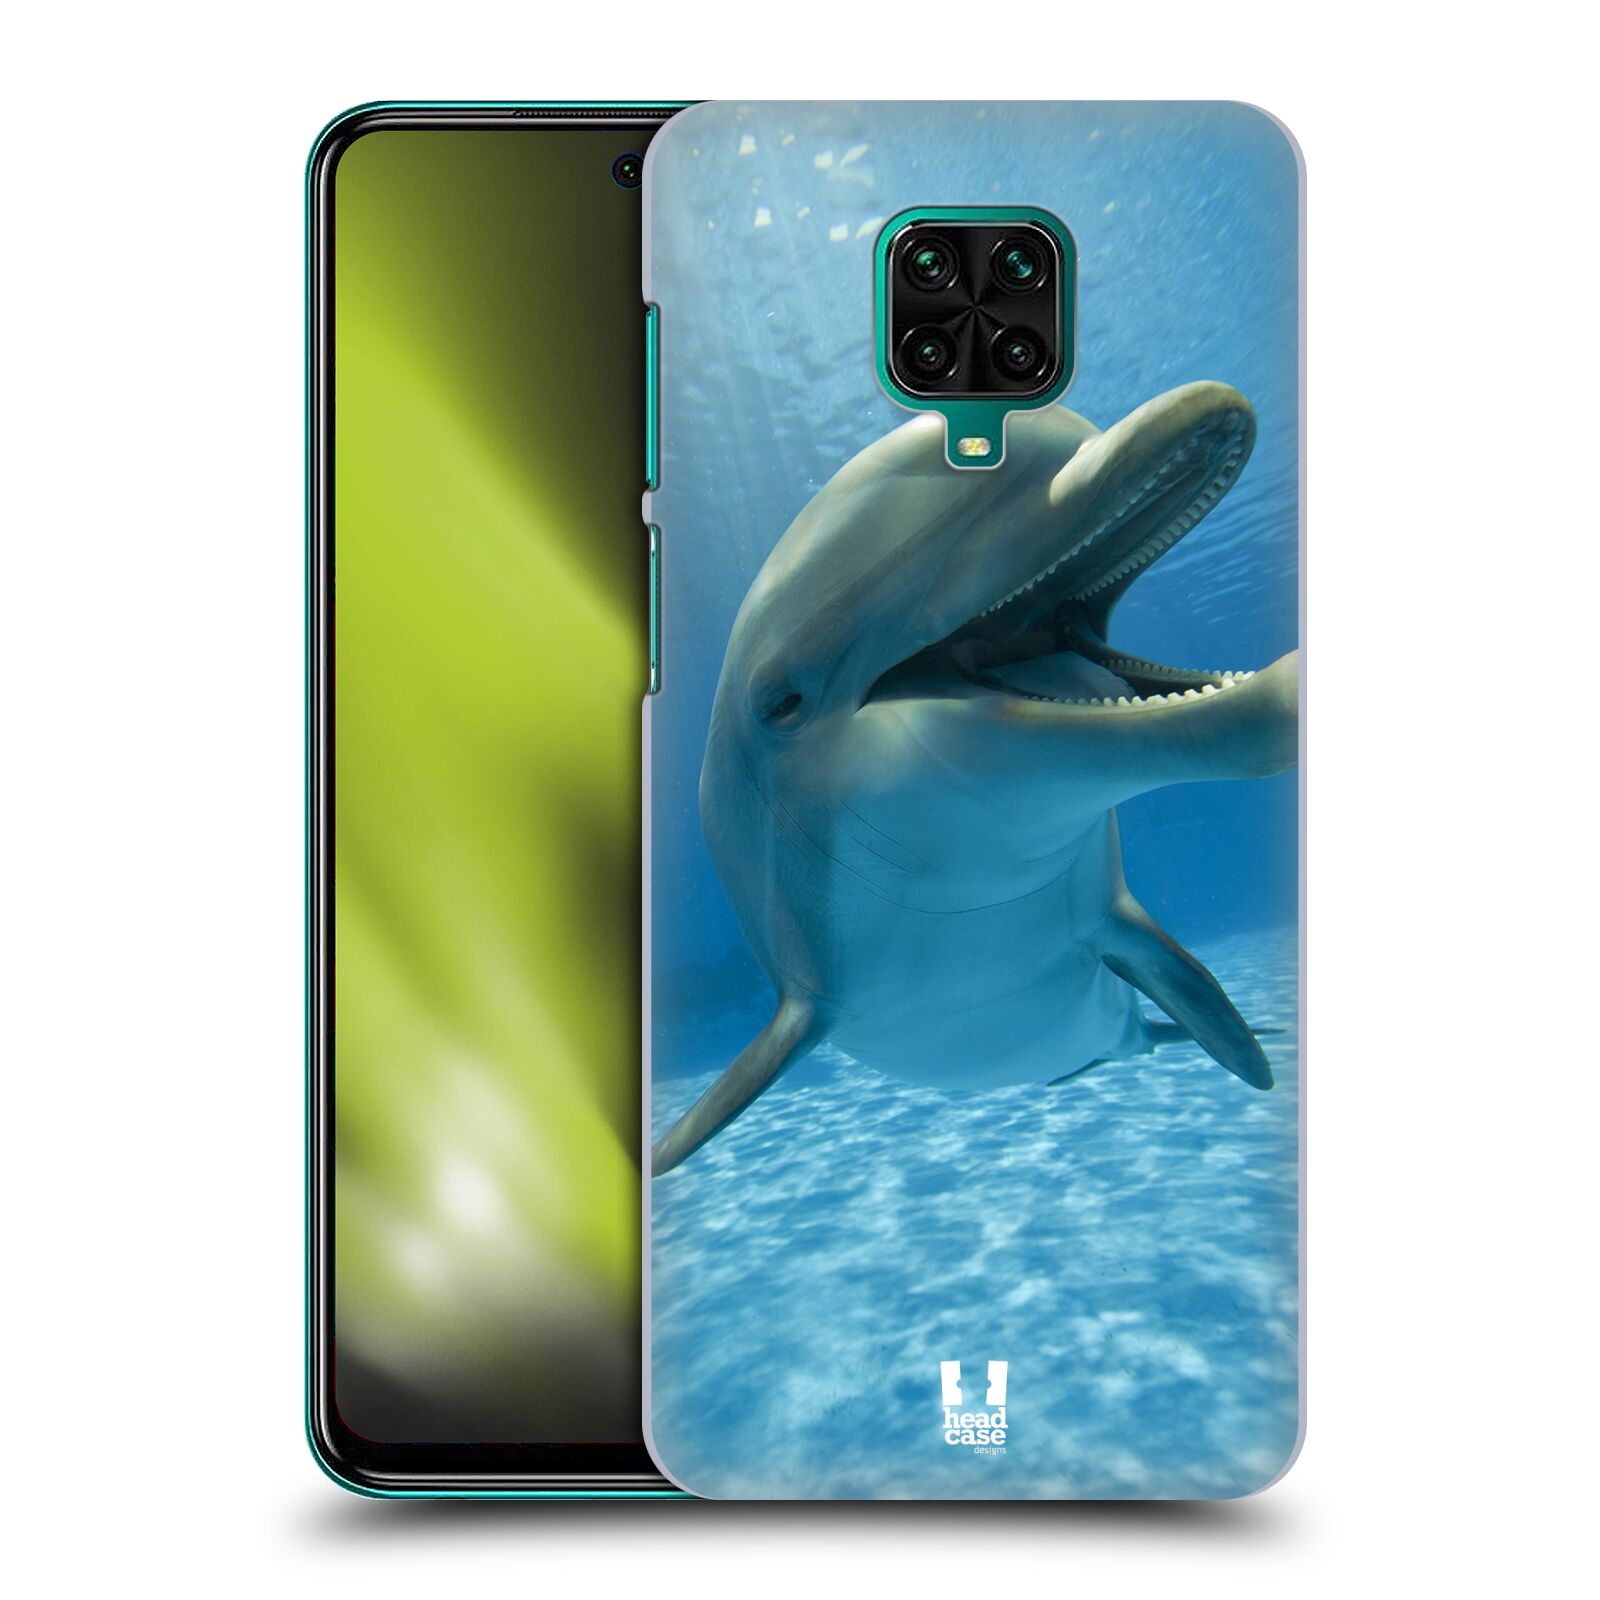 Zadní obal pro mobil Xiaomi Redmi Note 9 Pro - HEAD CASE - Svět zvířat delfín v moři